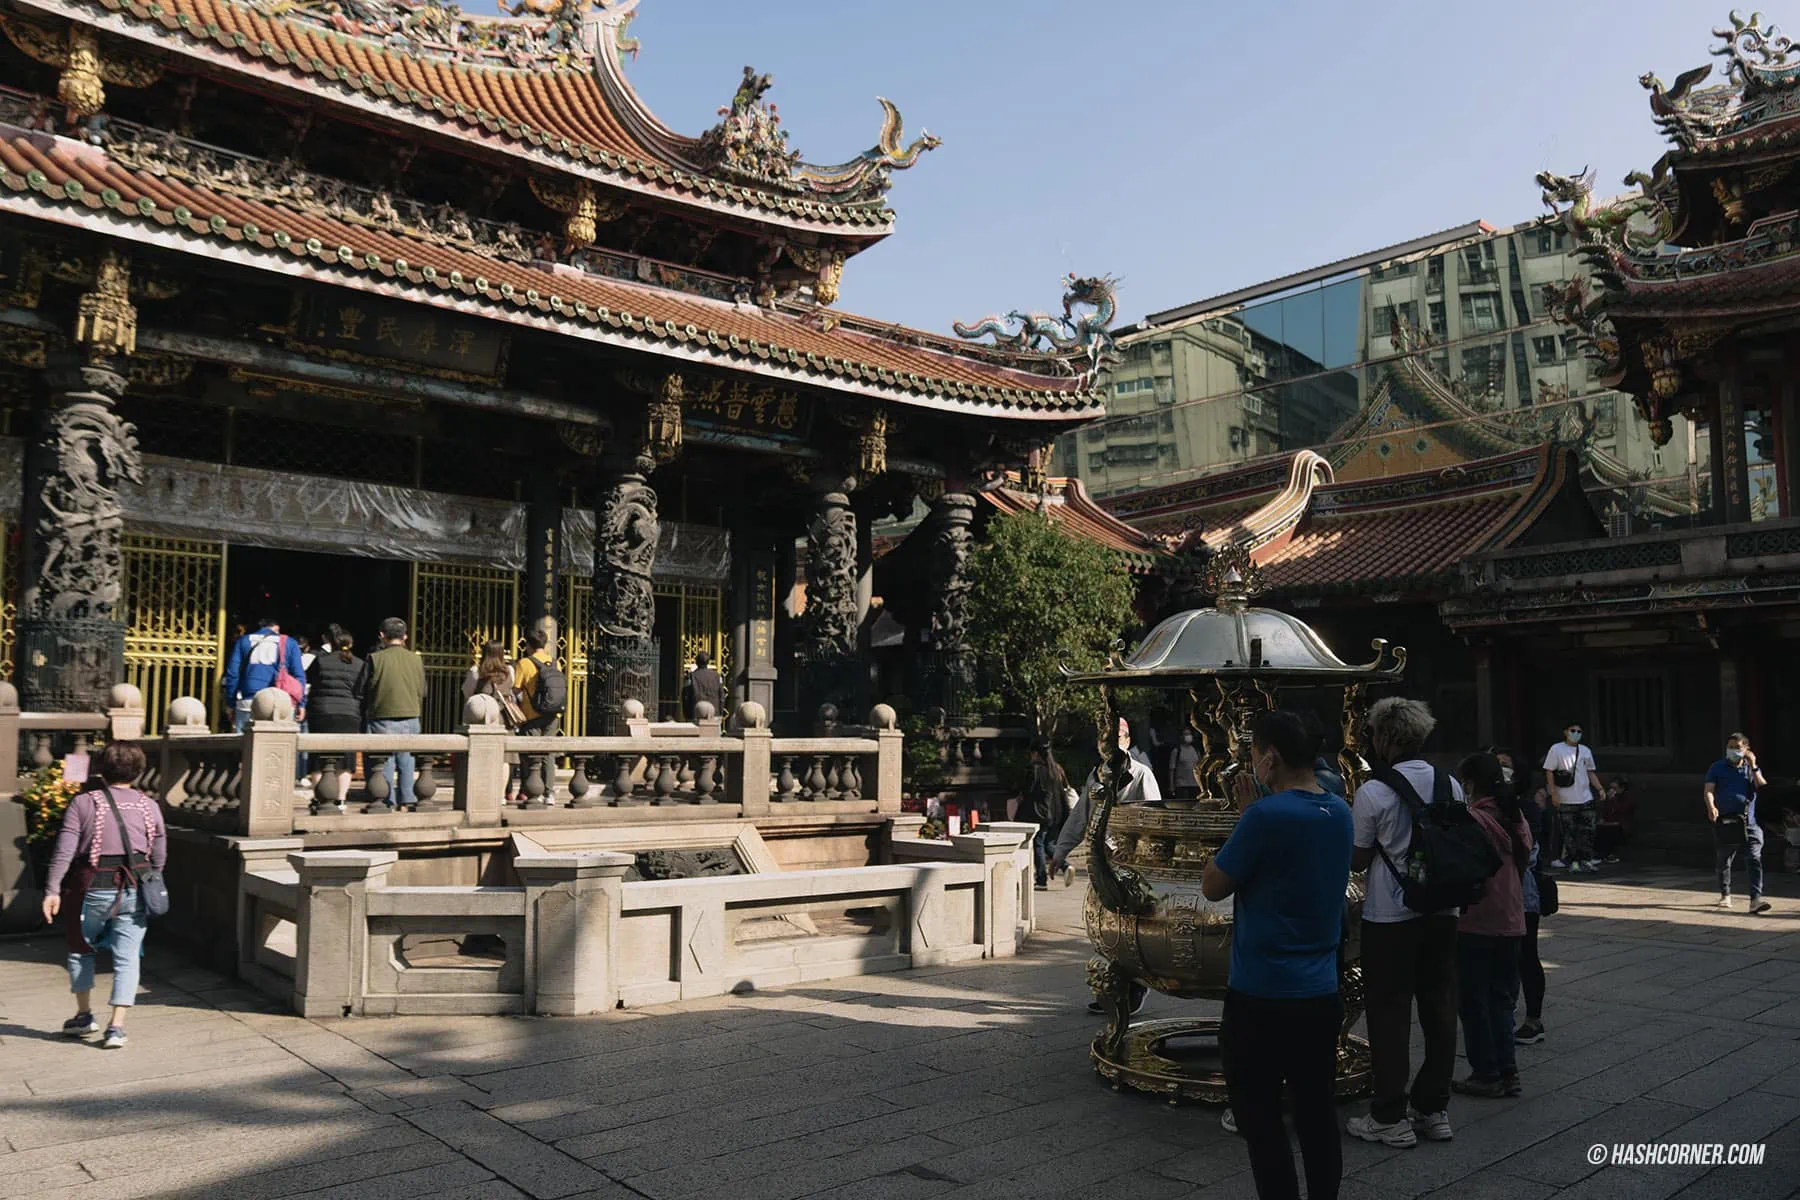 รีวิว วัดหลงซาน (Longshan Temple) x ไทเป วัดศักดิ์สิทธิ์มากที่สุดในไต้หวัน